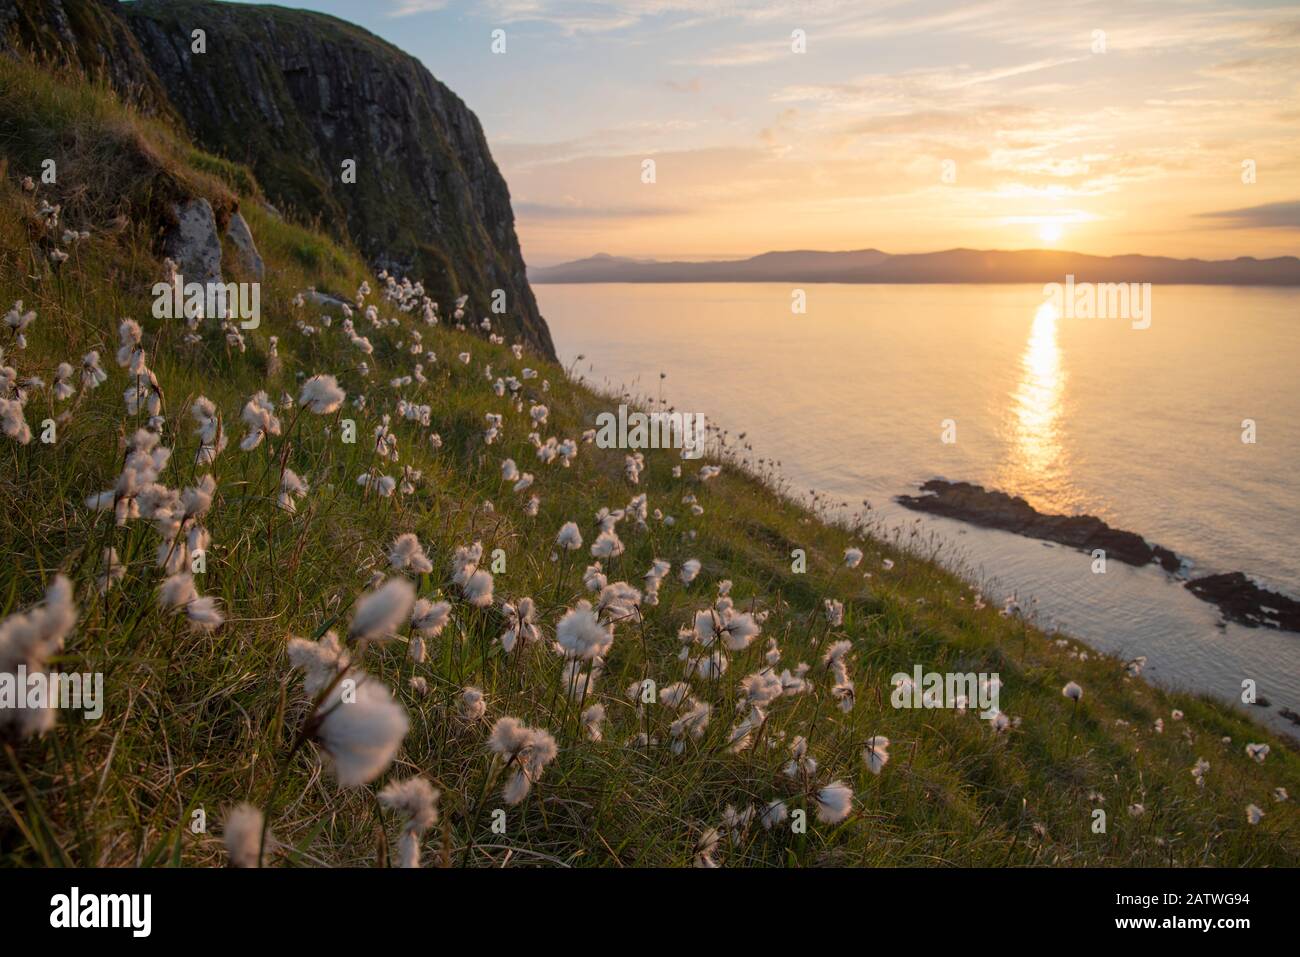 L'herbe de coton (Eriophorum angustifolium) qui pousse sur Garbh Eiléan avec l'île de Lewis derrière, Shiant Isles, Outer Hebrides, Ecosse, Royaume-Uni. Juin. Banque D'Images